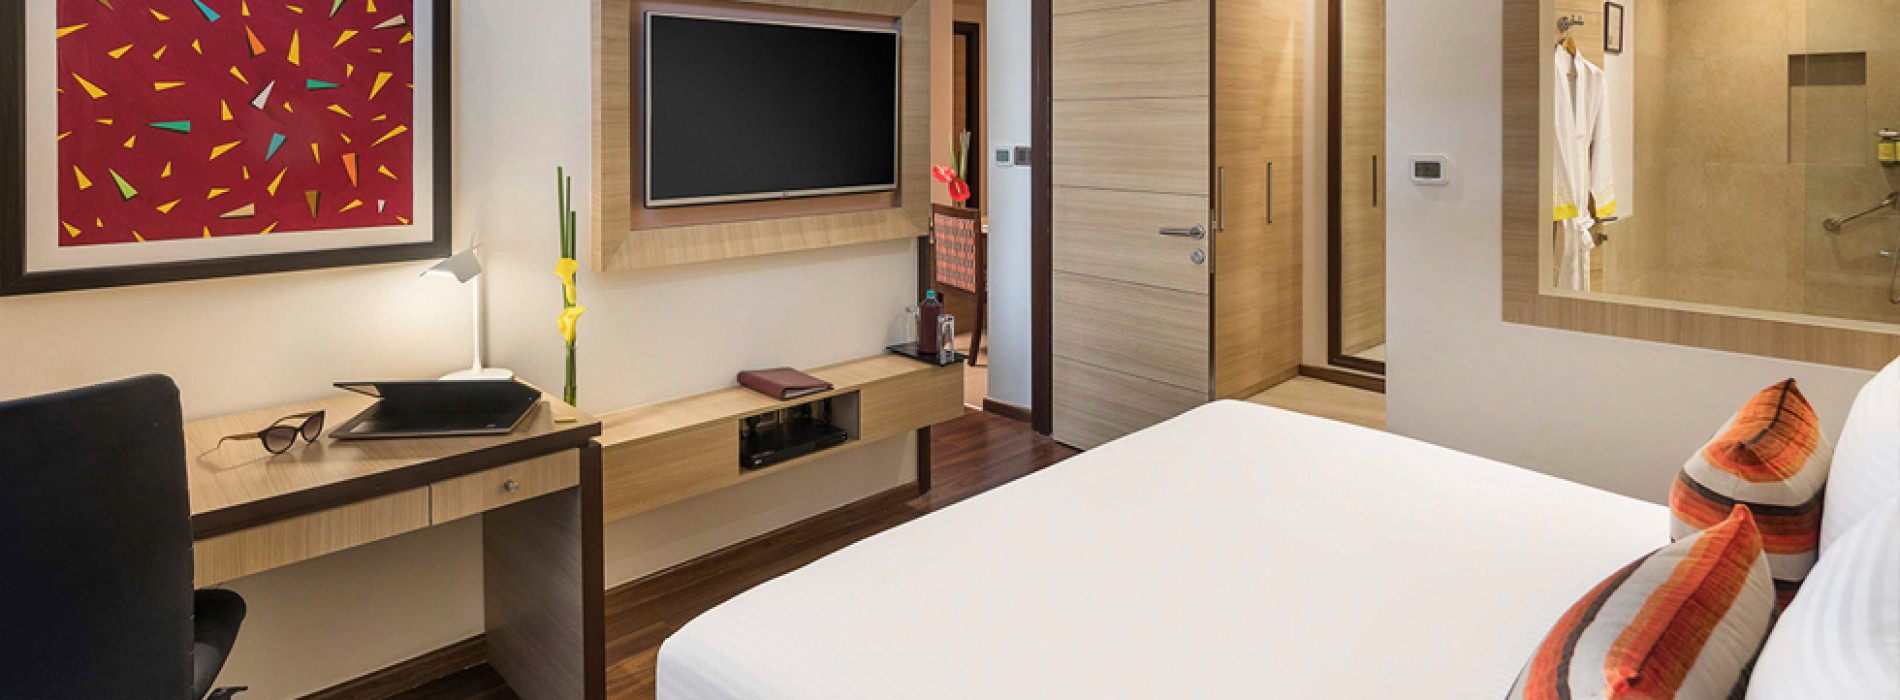 Sandal Suites, Noida’s Ist Upscale Serviced Suites, now open